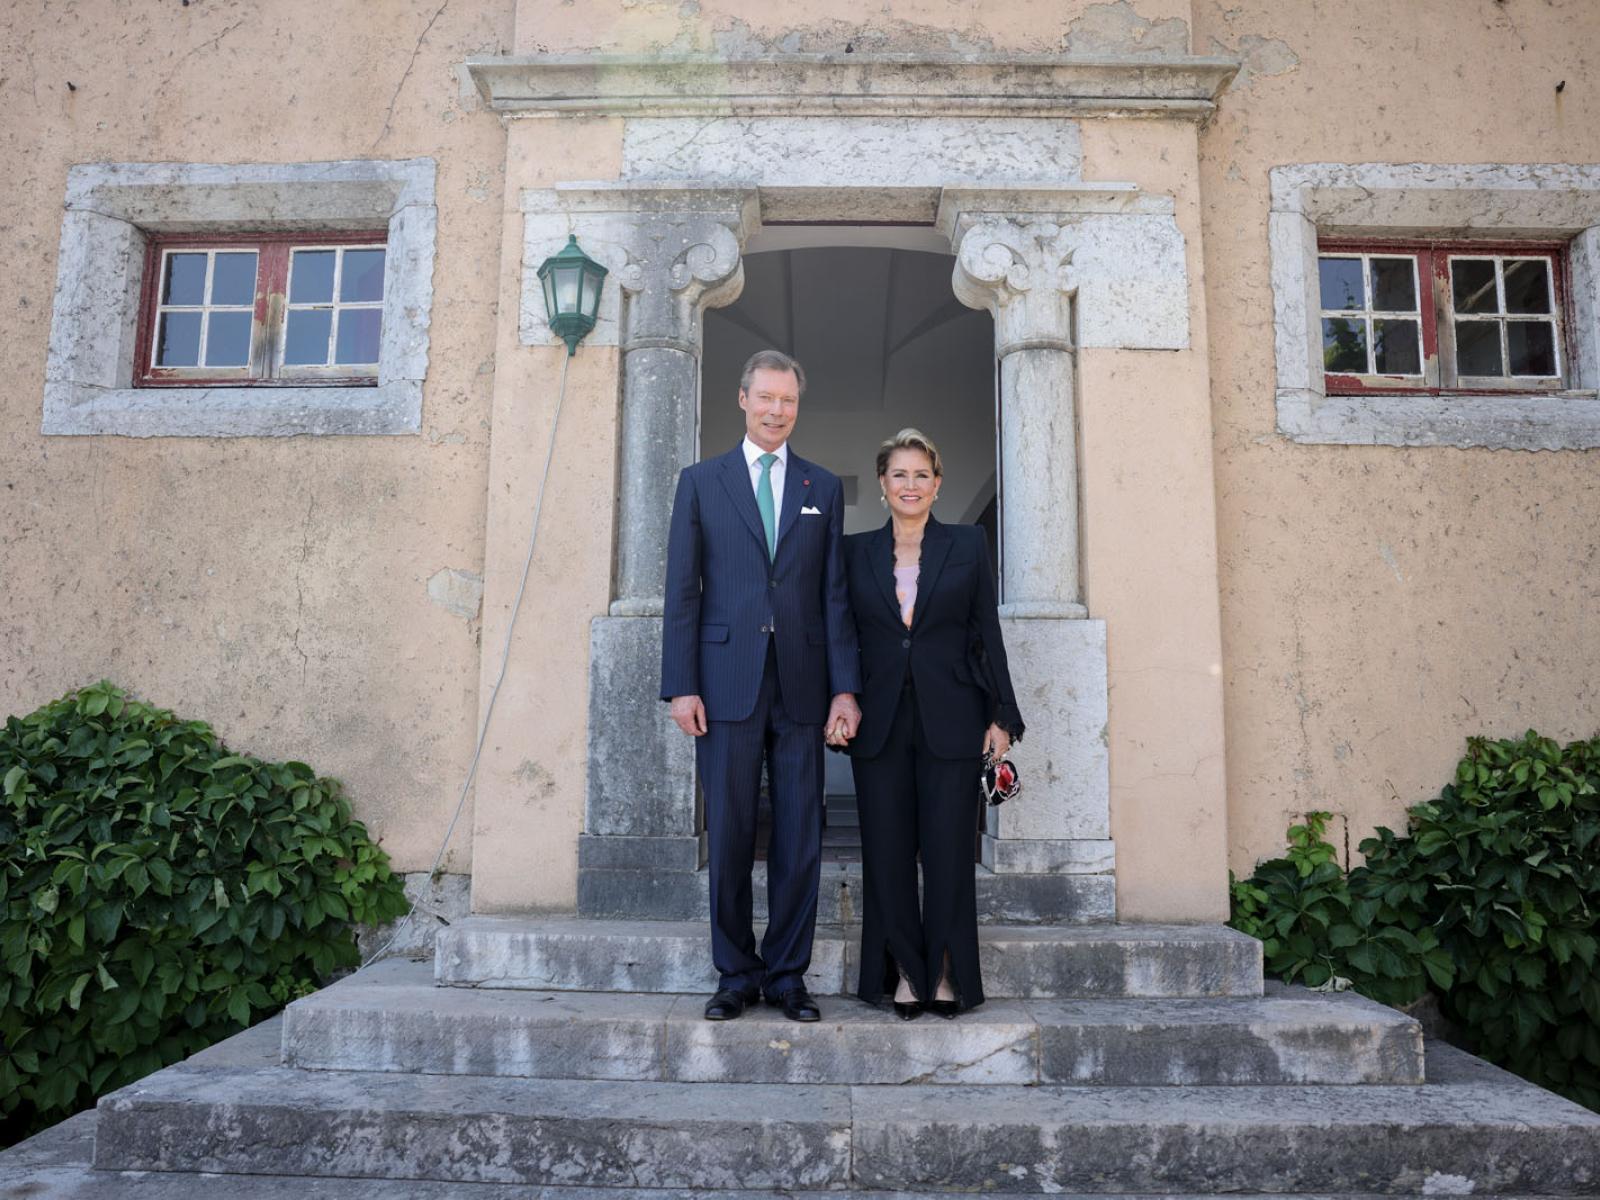 Le Couple grand-ducal devant l'entrée de la Casa Santa Maria